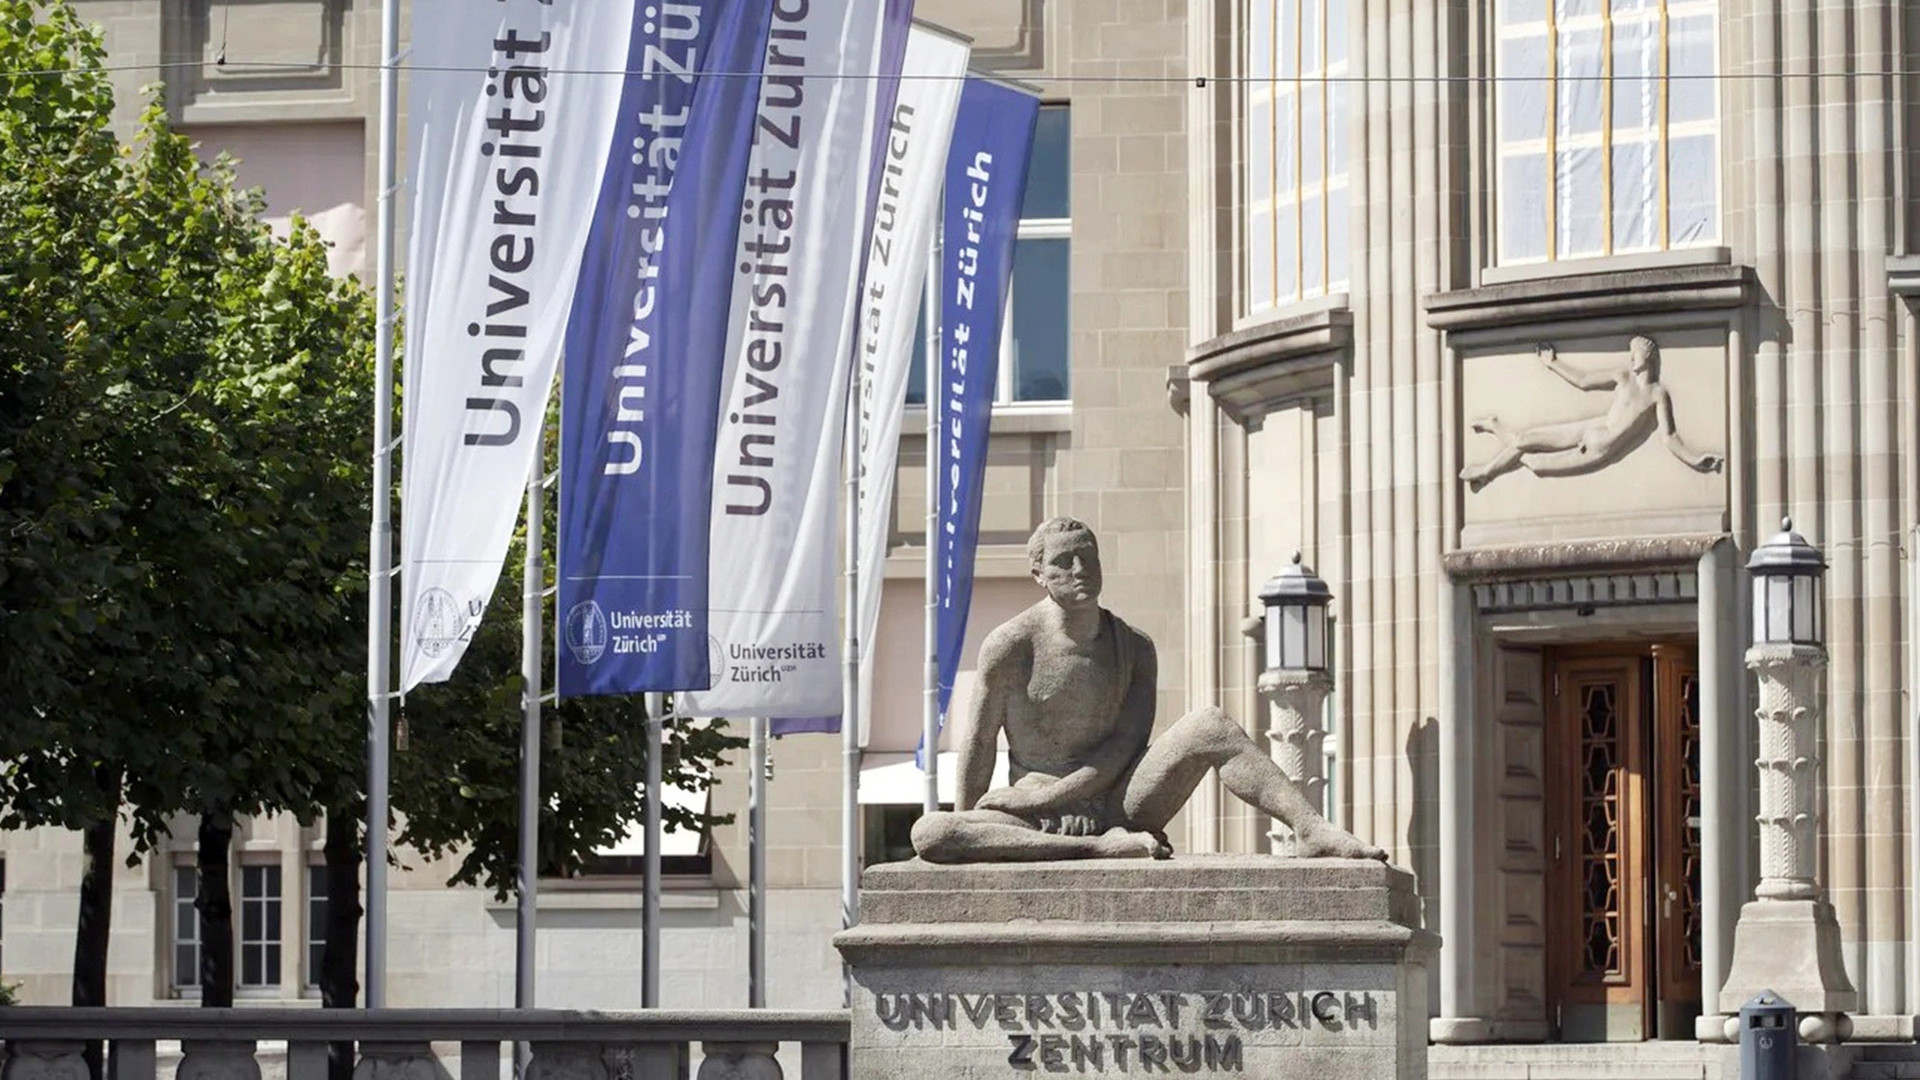 Trong bảng xếp hạng gần đây nhất của tạp chí Times Higher Education, ĐH Zurich đứng thứ 80 trong số những trường ĐH tốt nhất thế giới - Ảnh: Swissinfo.ch